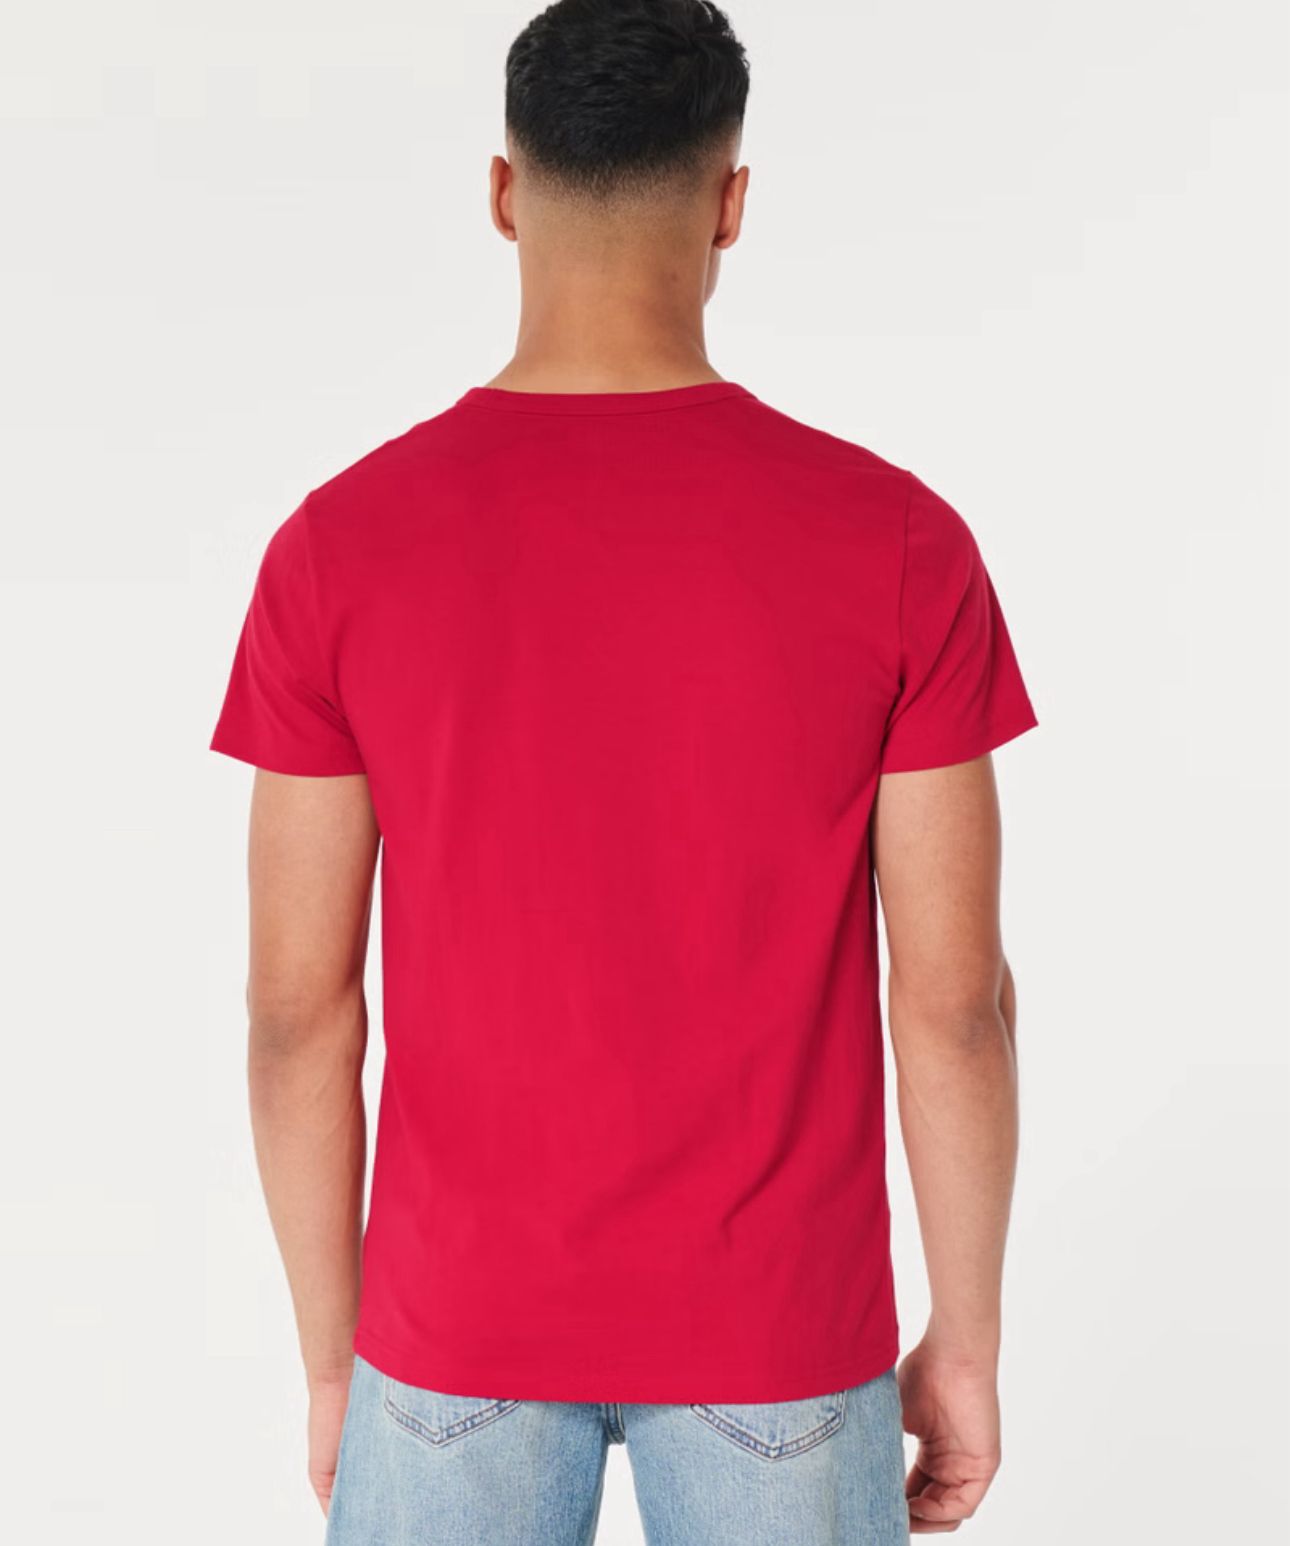 T-shirt Hollister original rojo con letras y logotipo de la marca HOLLISTER en negro.